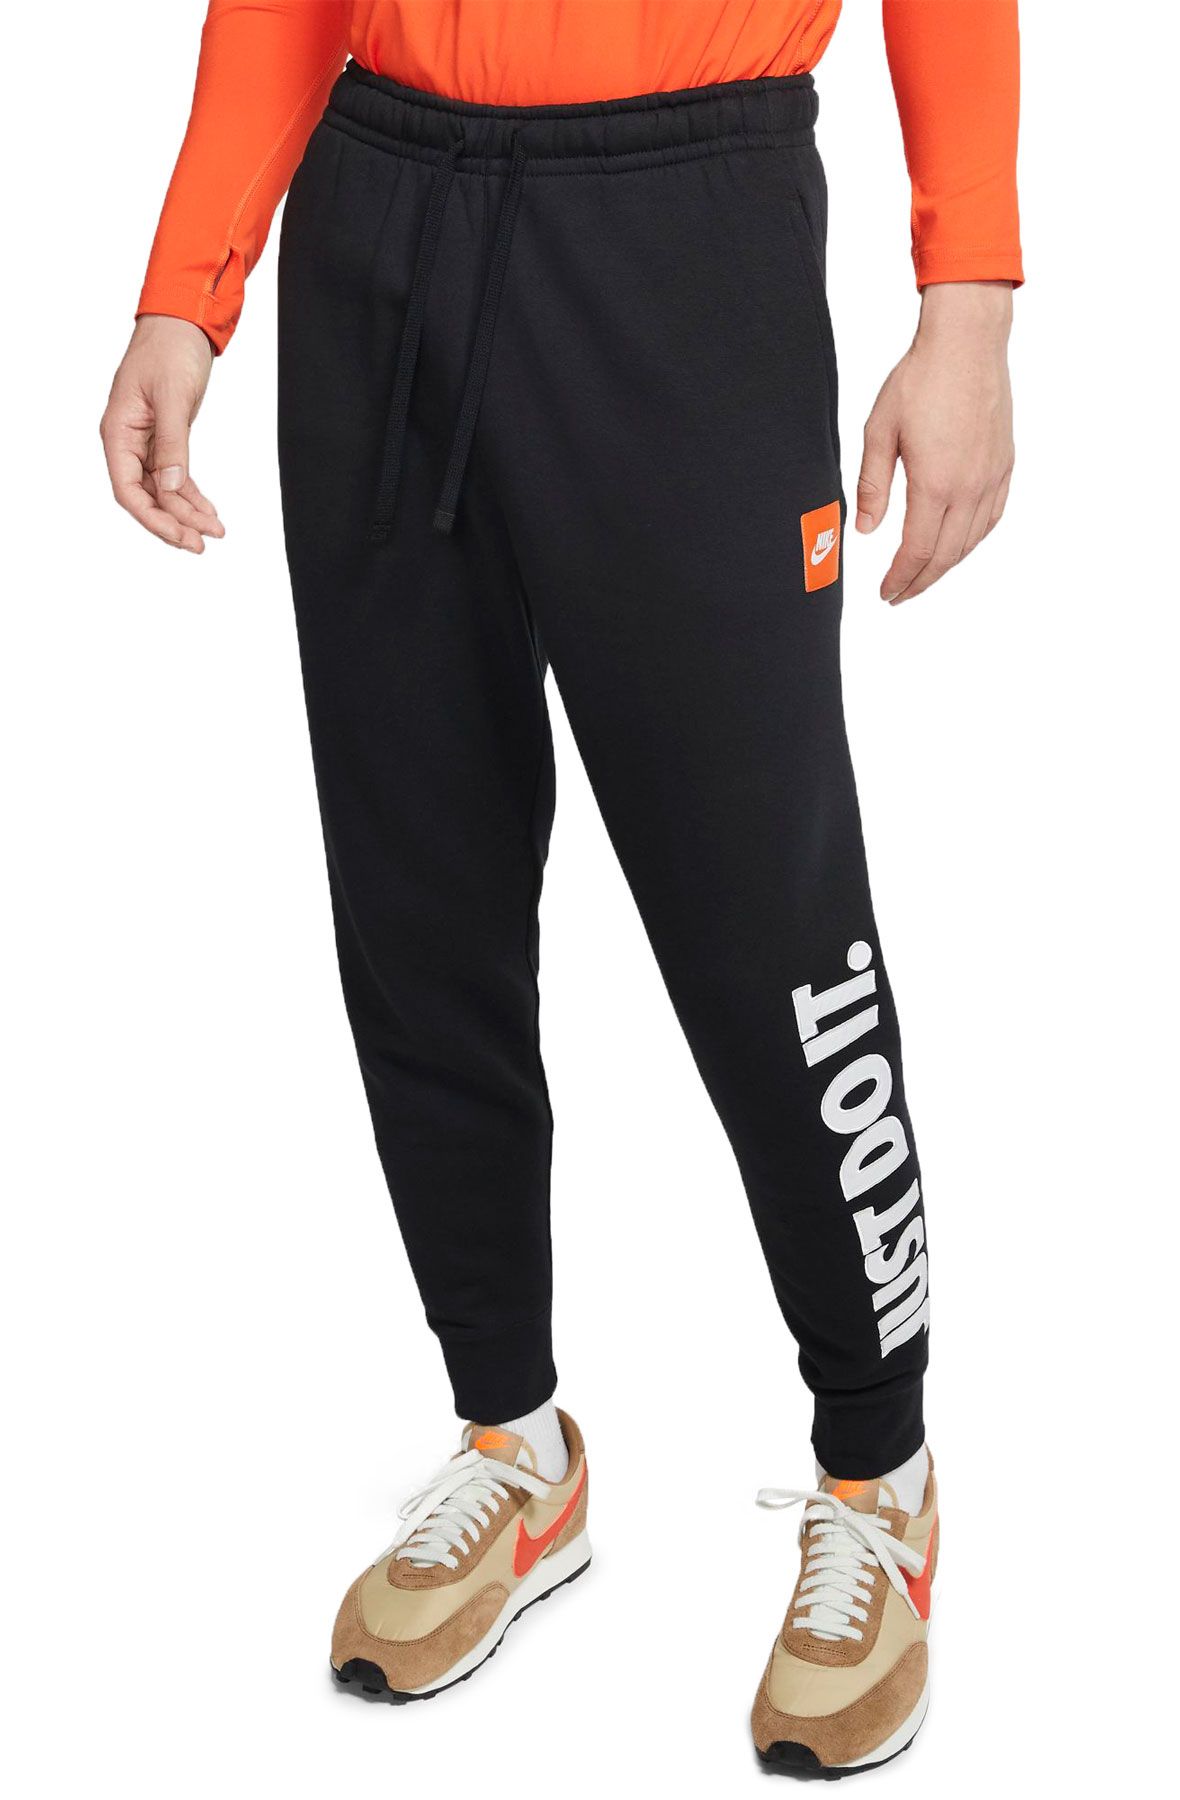 NIKE Sportswear JDI Fleece Pants BV5114 010 - Shiekh